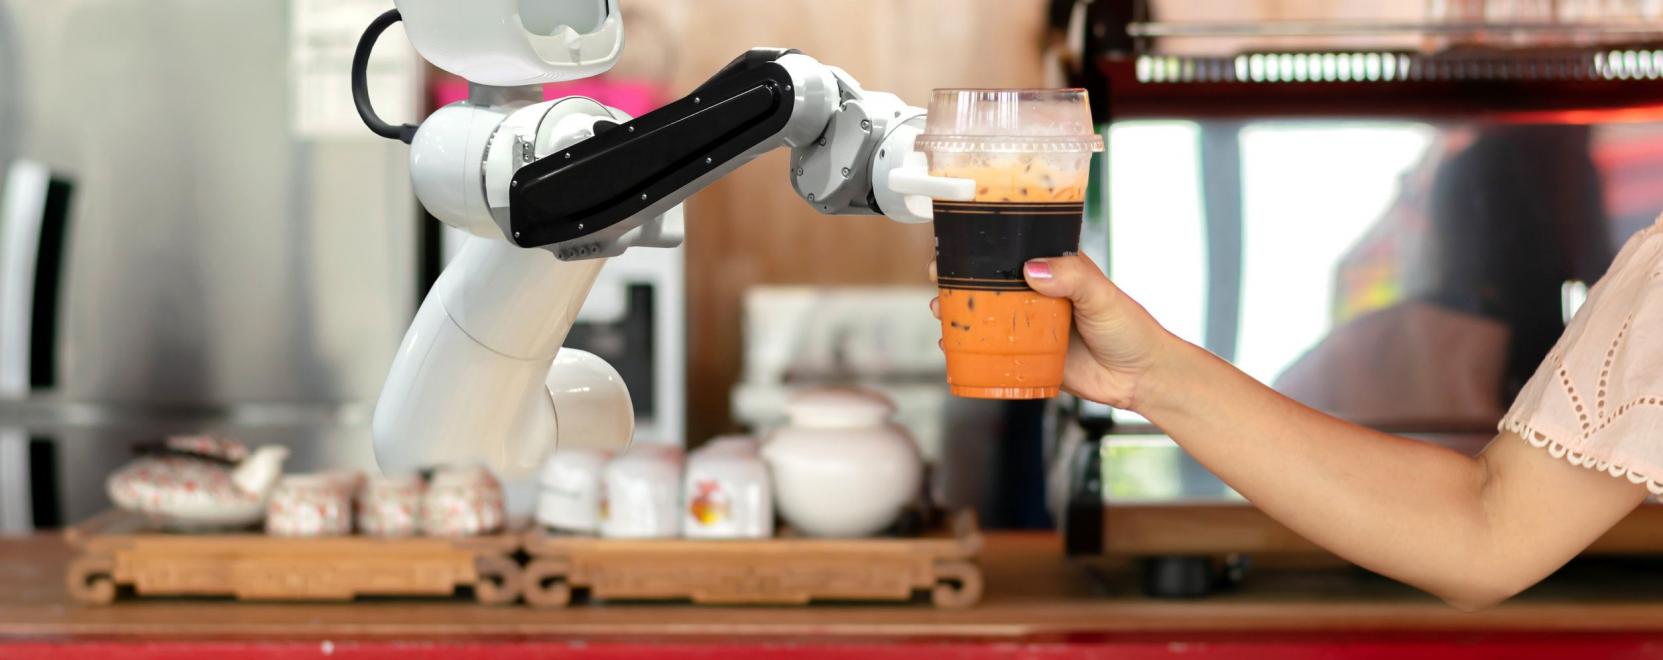 Kávéfőző robotokat is csatasorba állítanak a téli olimpián